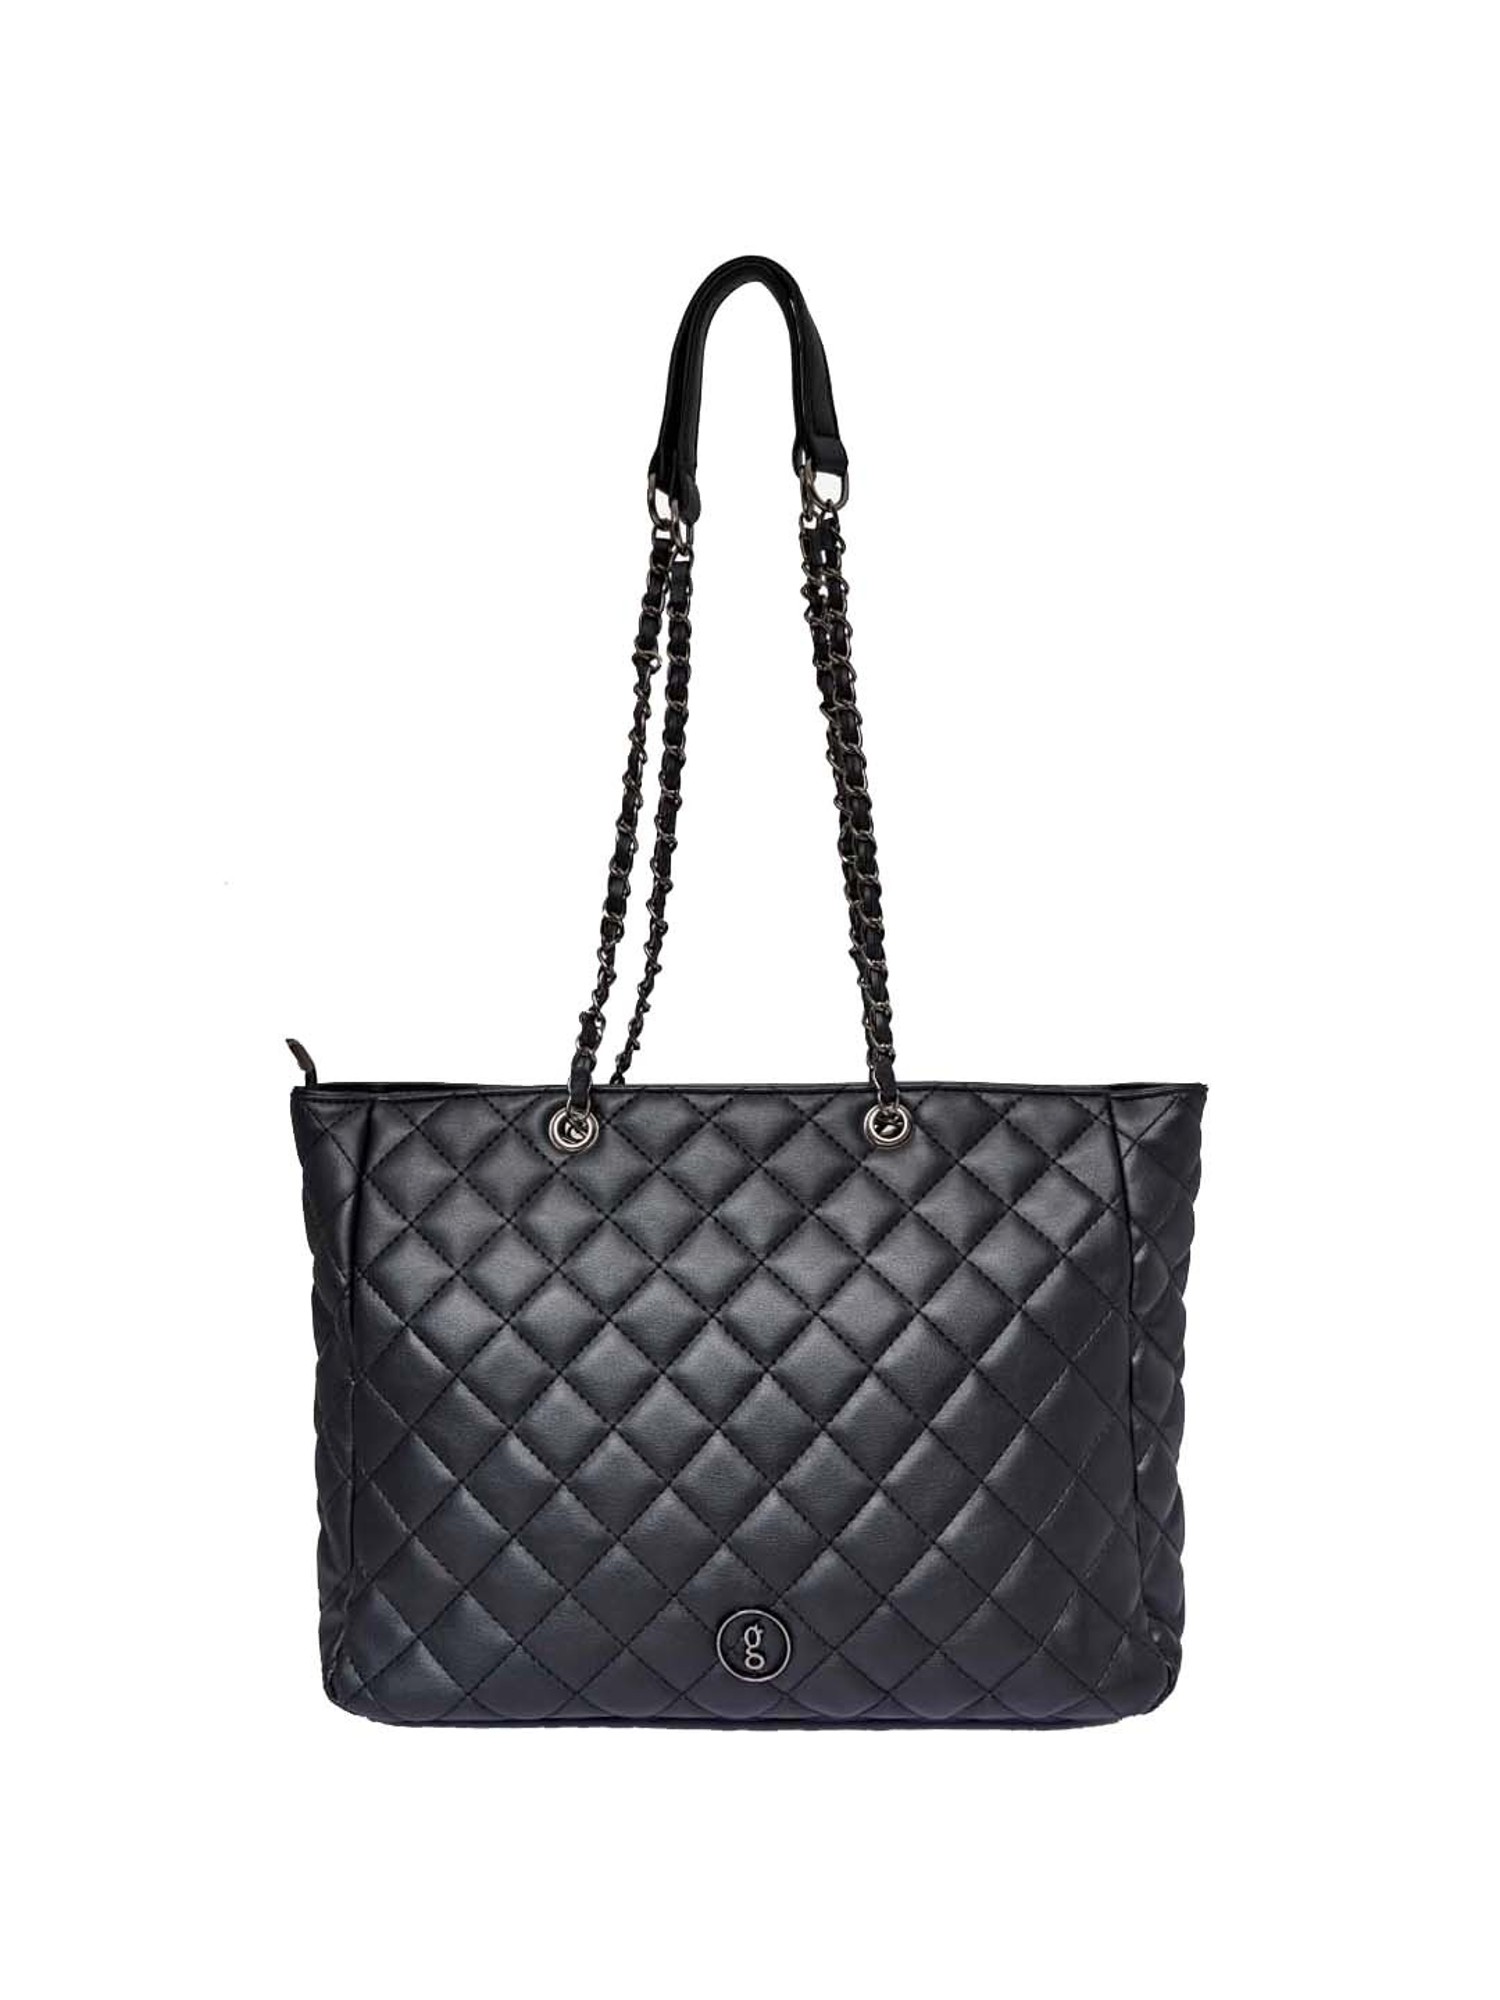 Buy Global Desi Black Quilted Medium Tote Handbag Online At Best